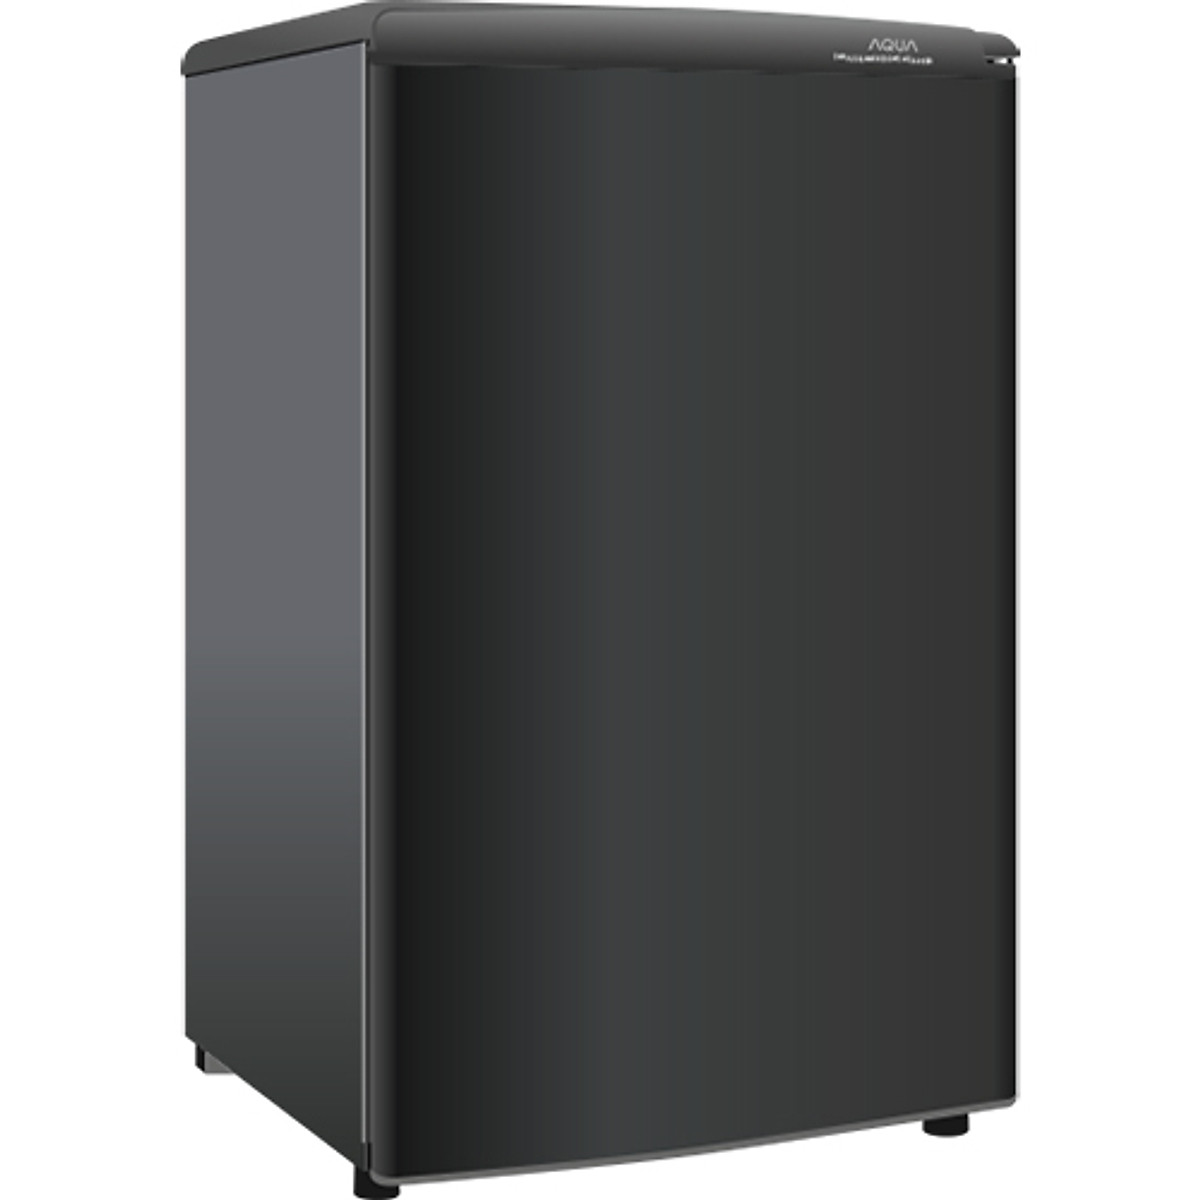 [GIAO HÀNG XUYÊN TẾT]Tủ lạnh Aqua 90 lít AQR-D99FA BS